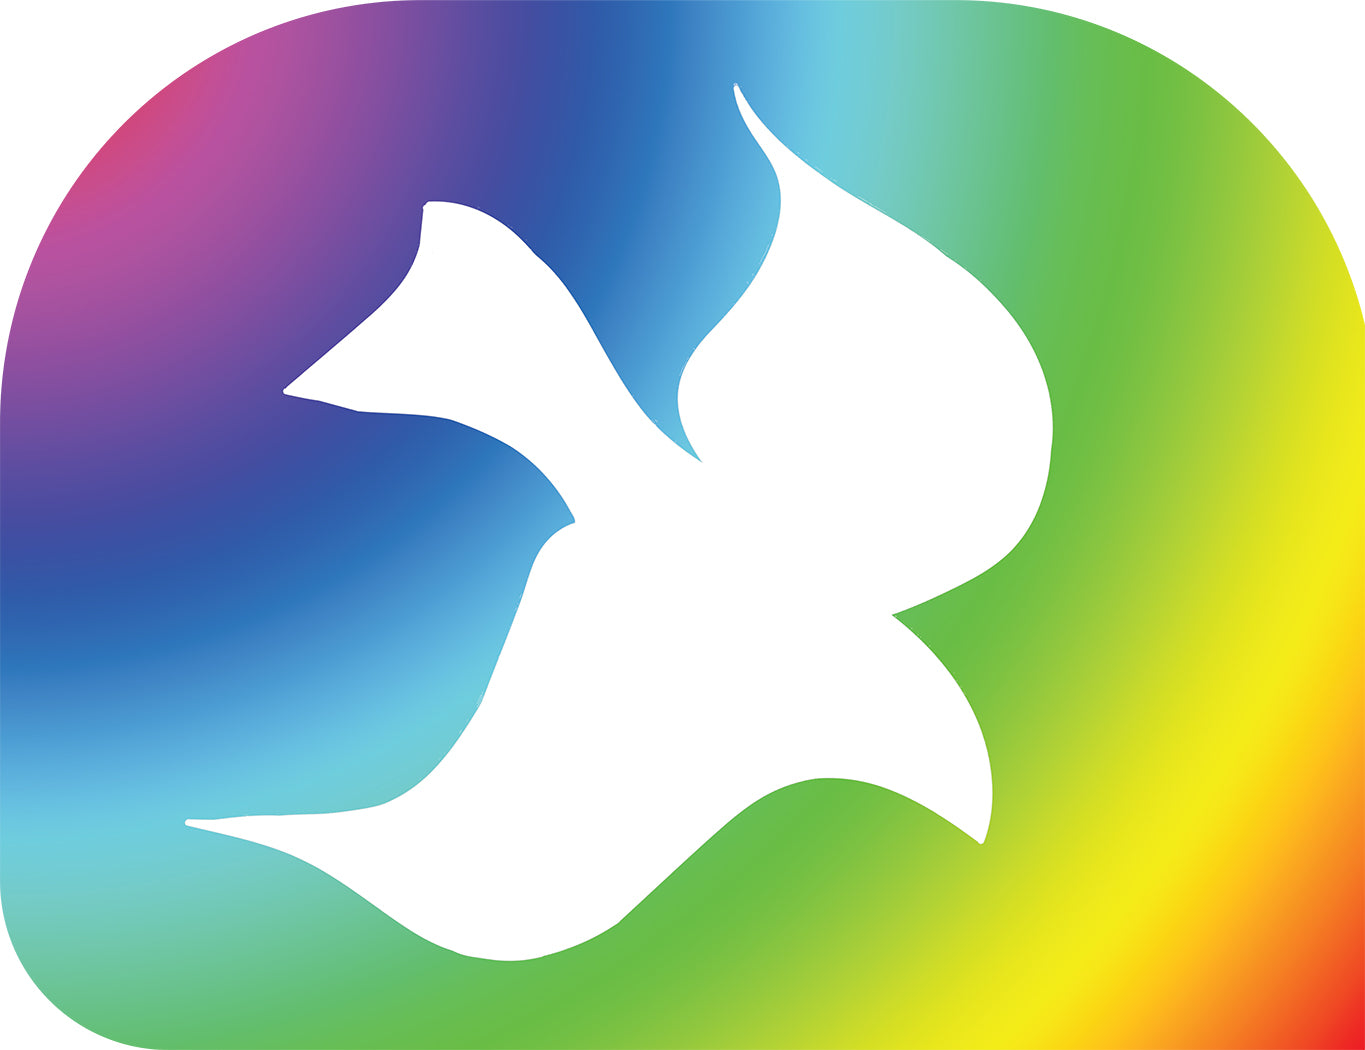 Fond de spectre de colombe (Saint-Esprit) - Drapeaux imprimés Habotai Silk Quill Wing Plums Wxl-quill